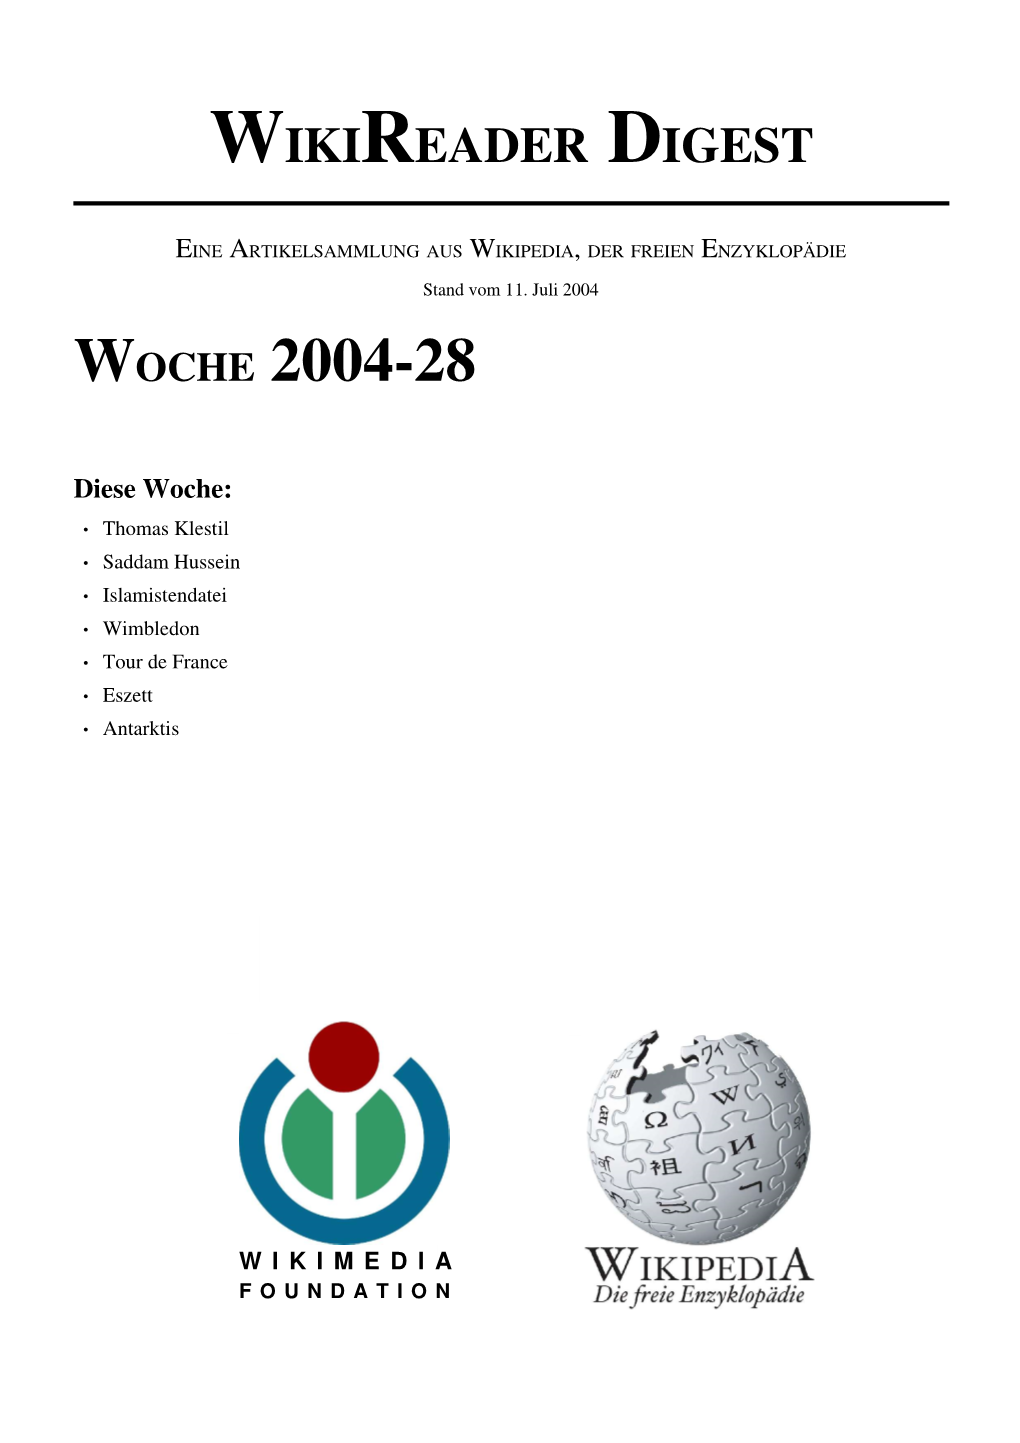 Wikireader Digest 2004-28 -- Seite 1 ARTIKELAUSWAHL